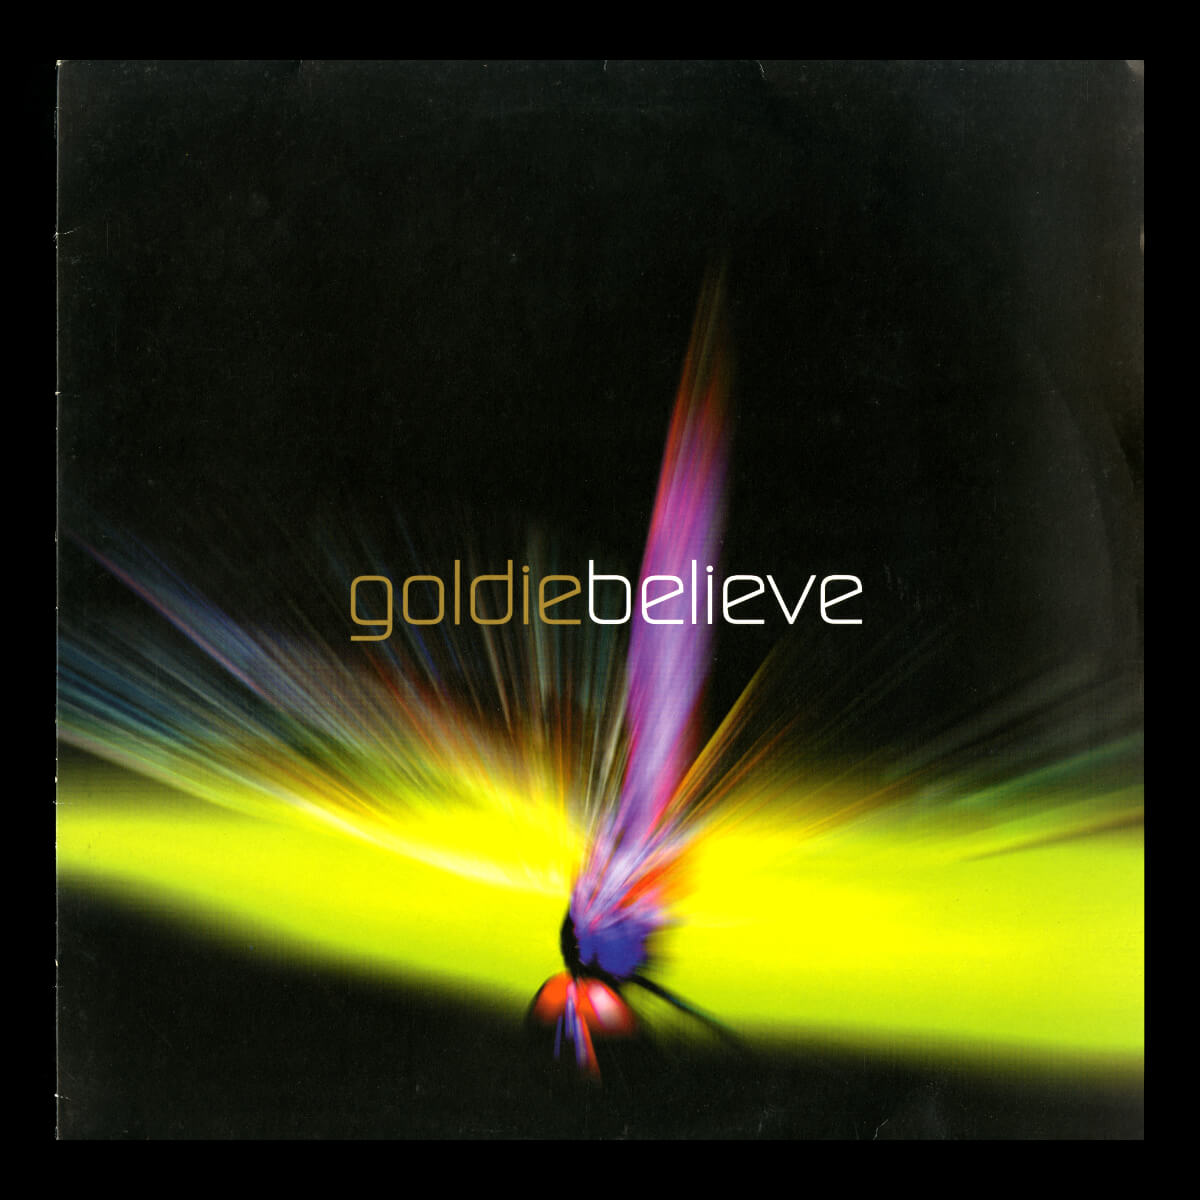 Goldie – Believe